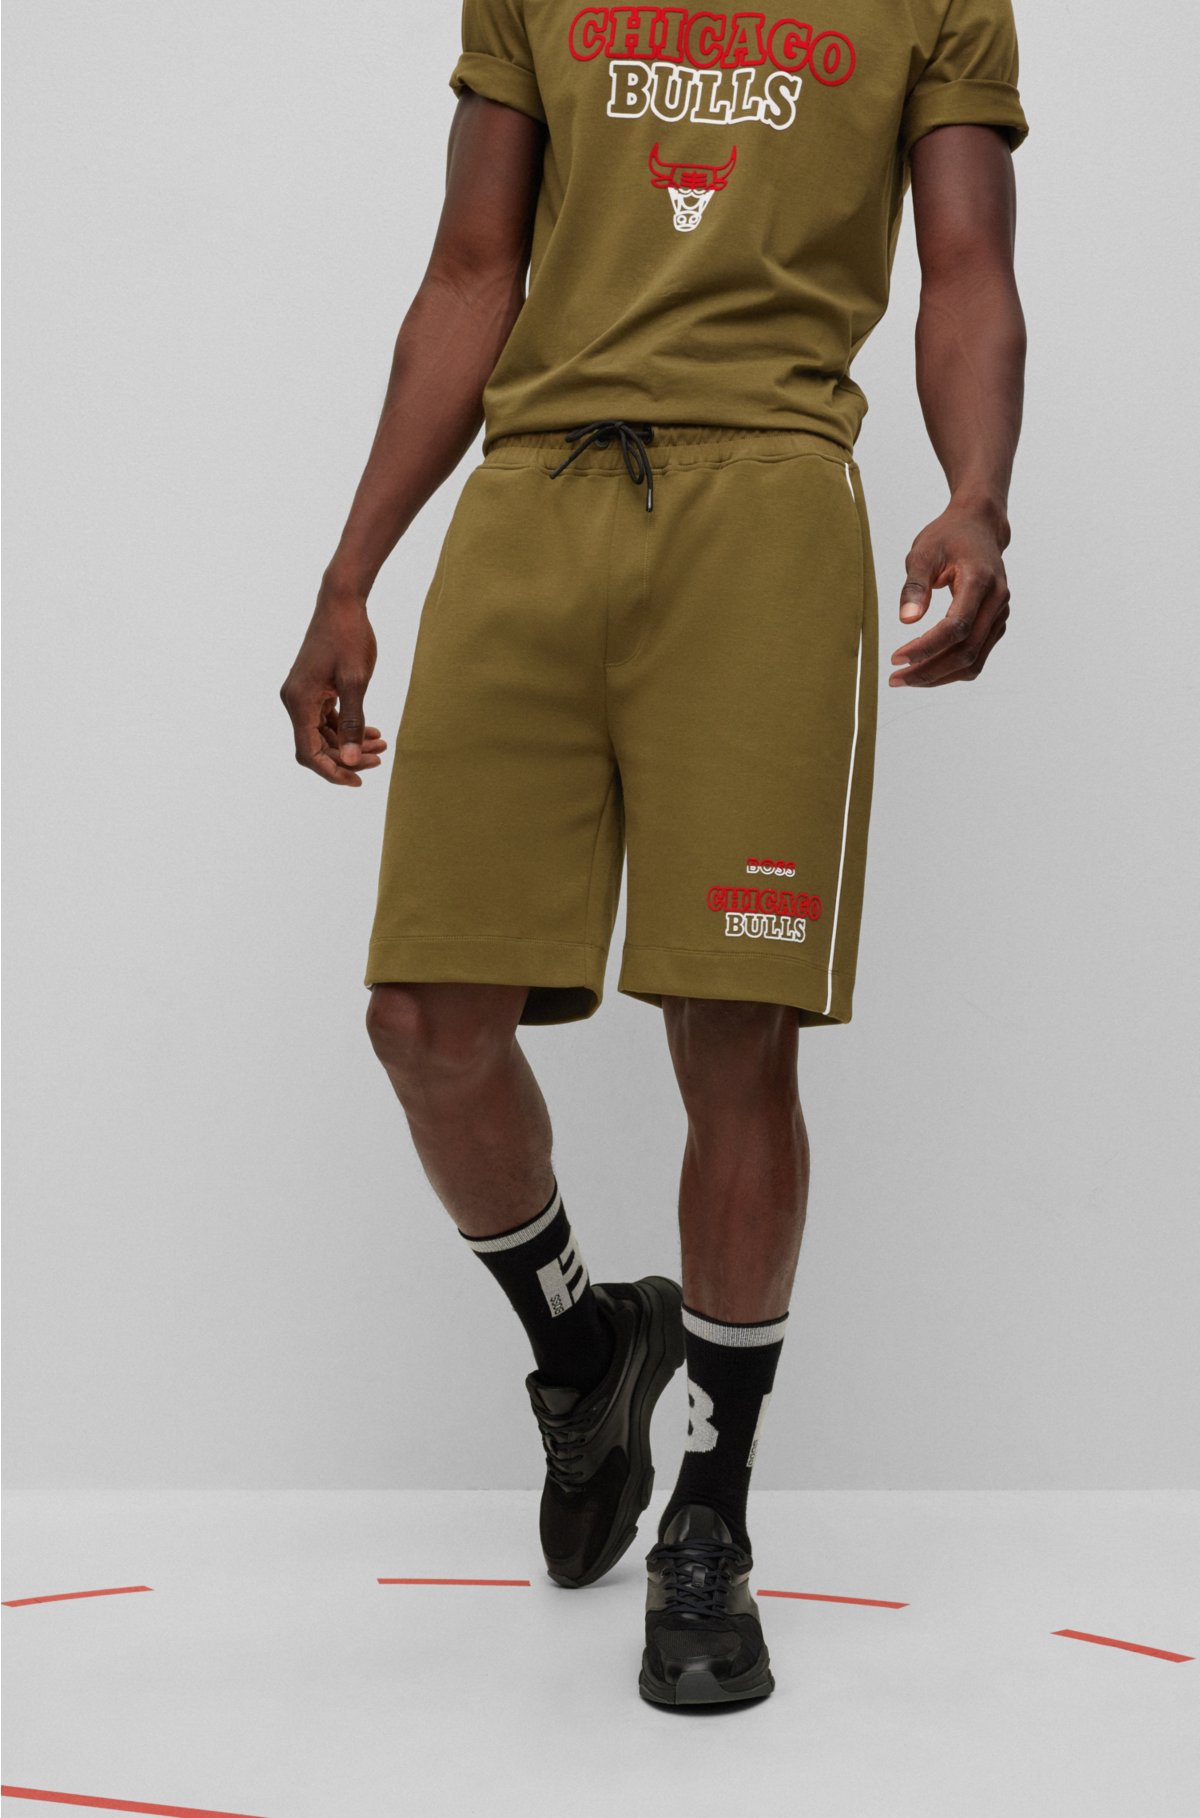 Chicago Bulls NBA Bermuda shorts - NBA - Collabs - CLOTHING - Man